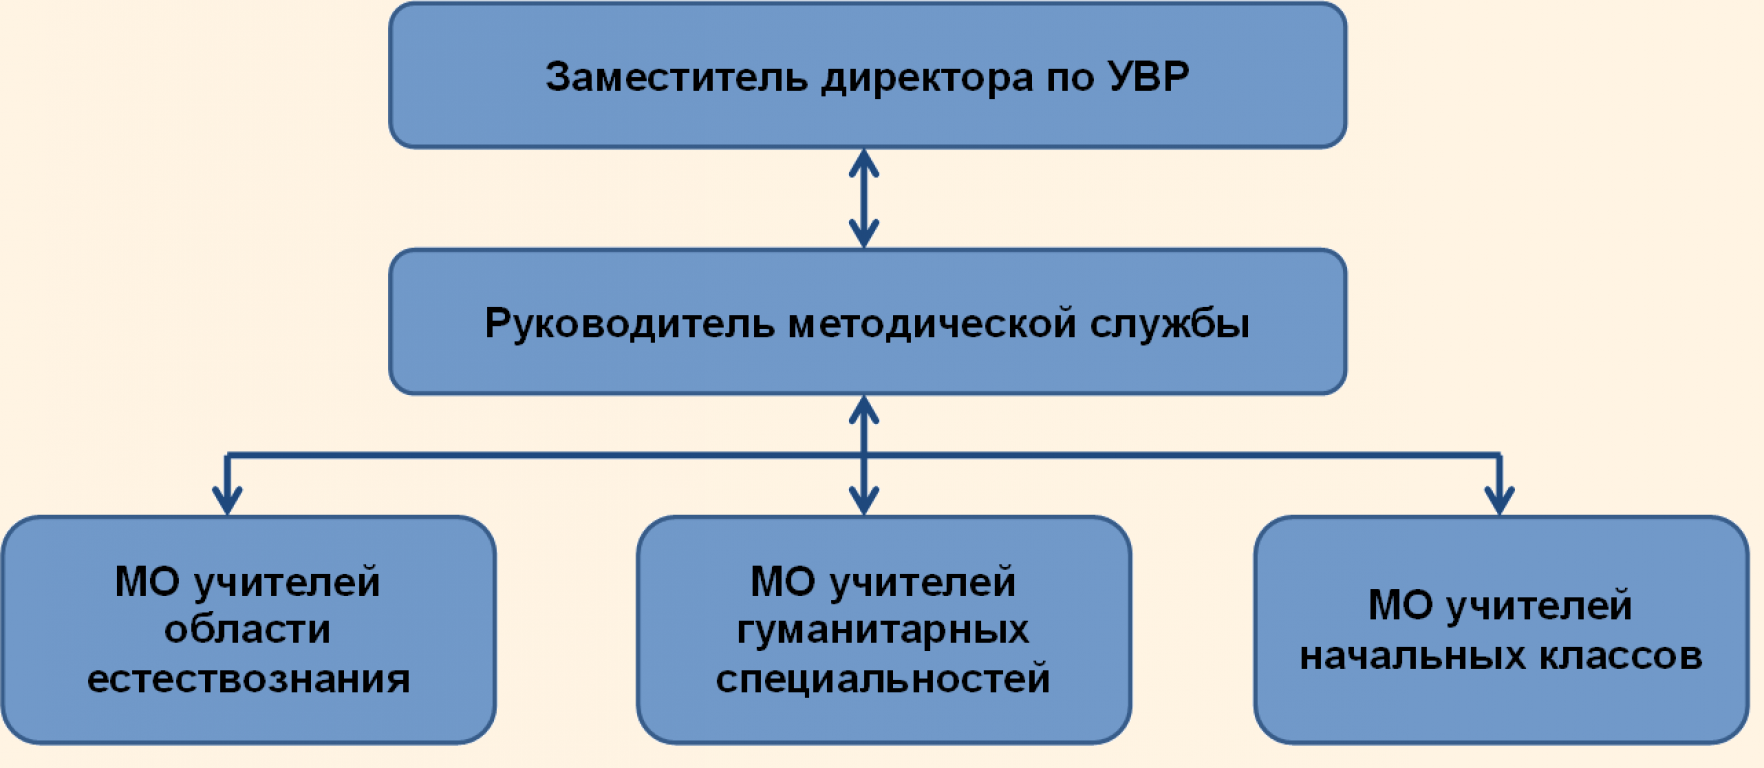 Структура методической службы